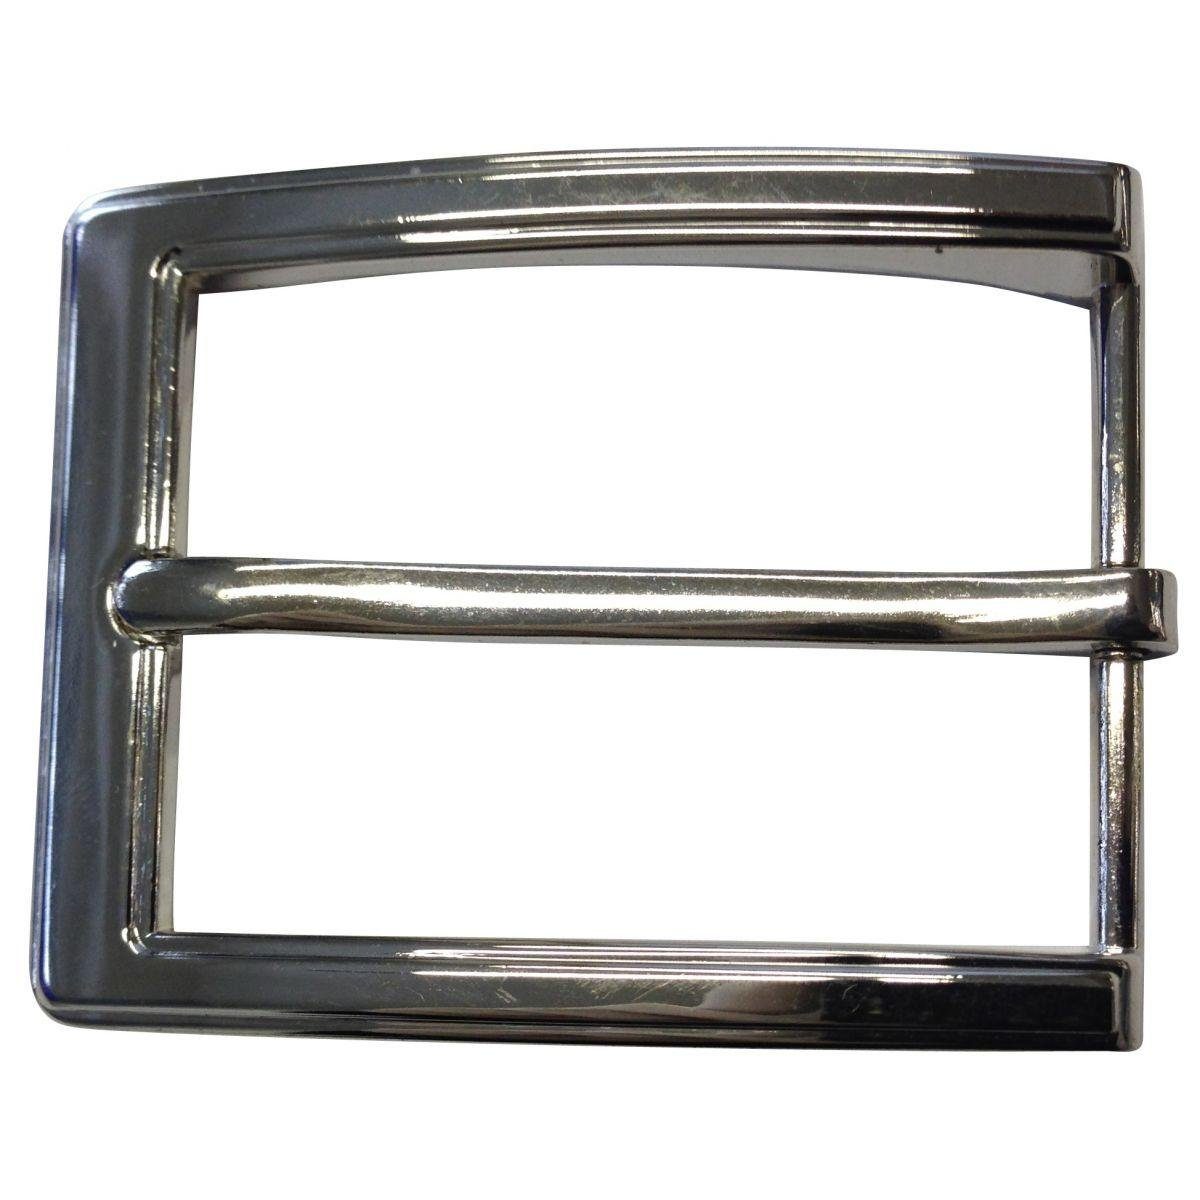 BELTINGER Gürtelschnalle cm Für Silber, - Glänzend 3.5cm Dorn-Schließe Gürtelschließe - Gürtel 35mm - 3,5